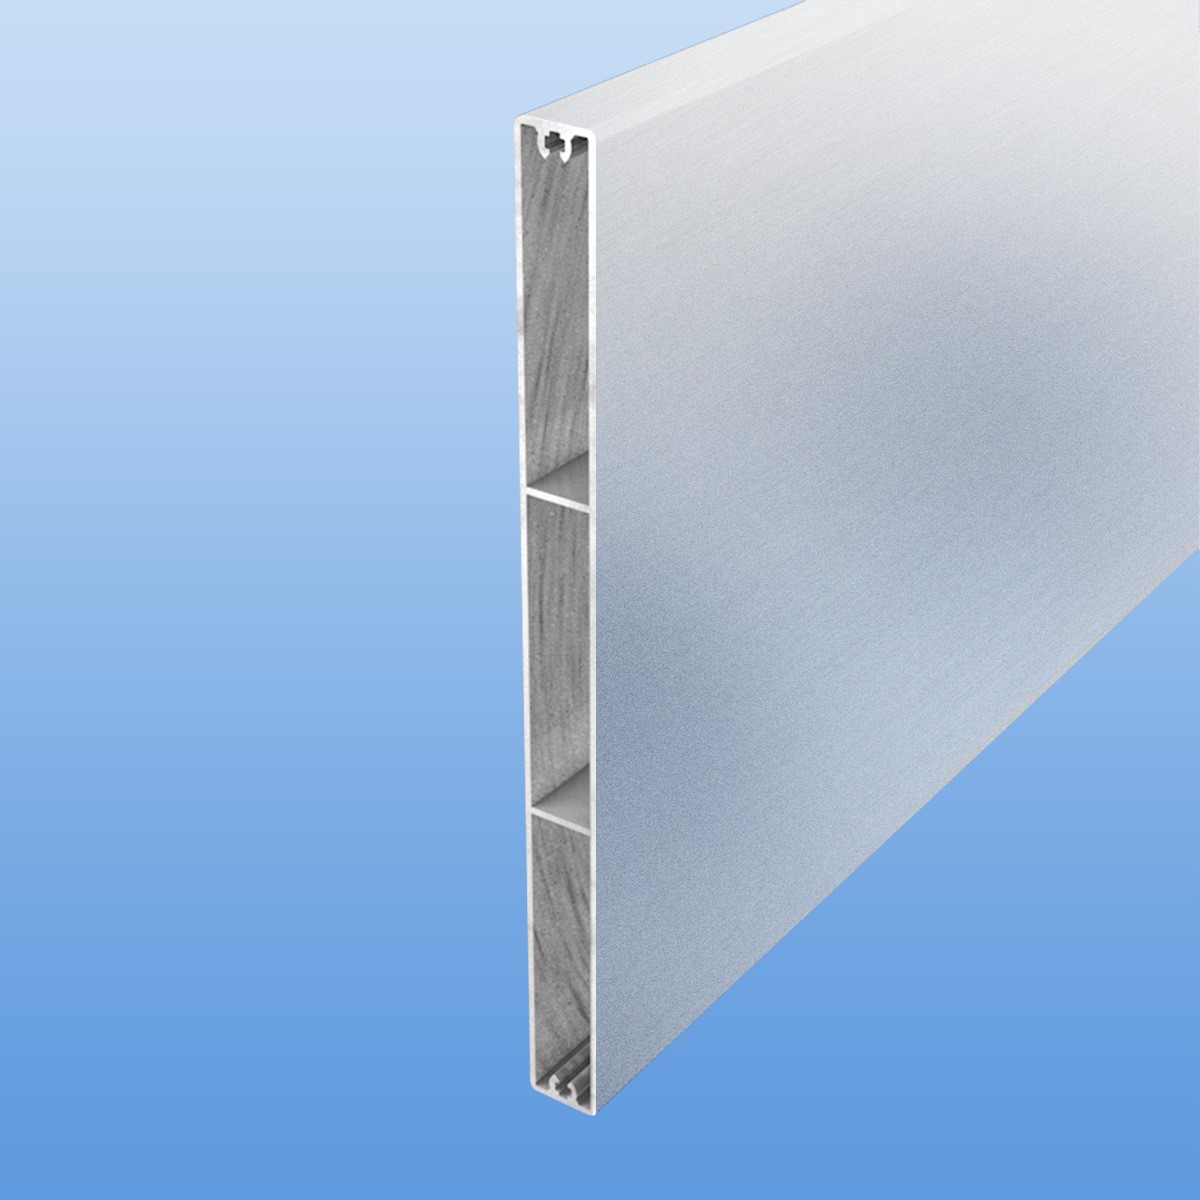 Balkonbretter aus Aluminium 200 mm breit in blank / unbeschichtet